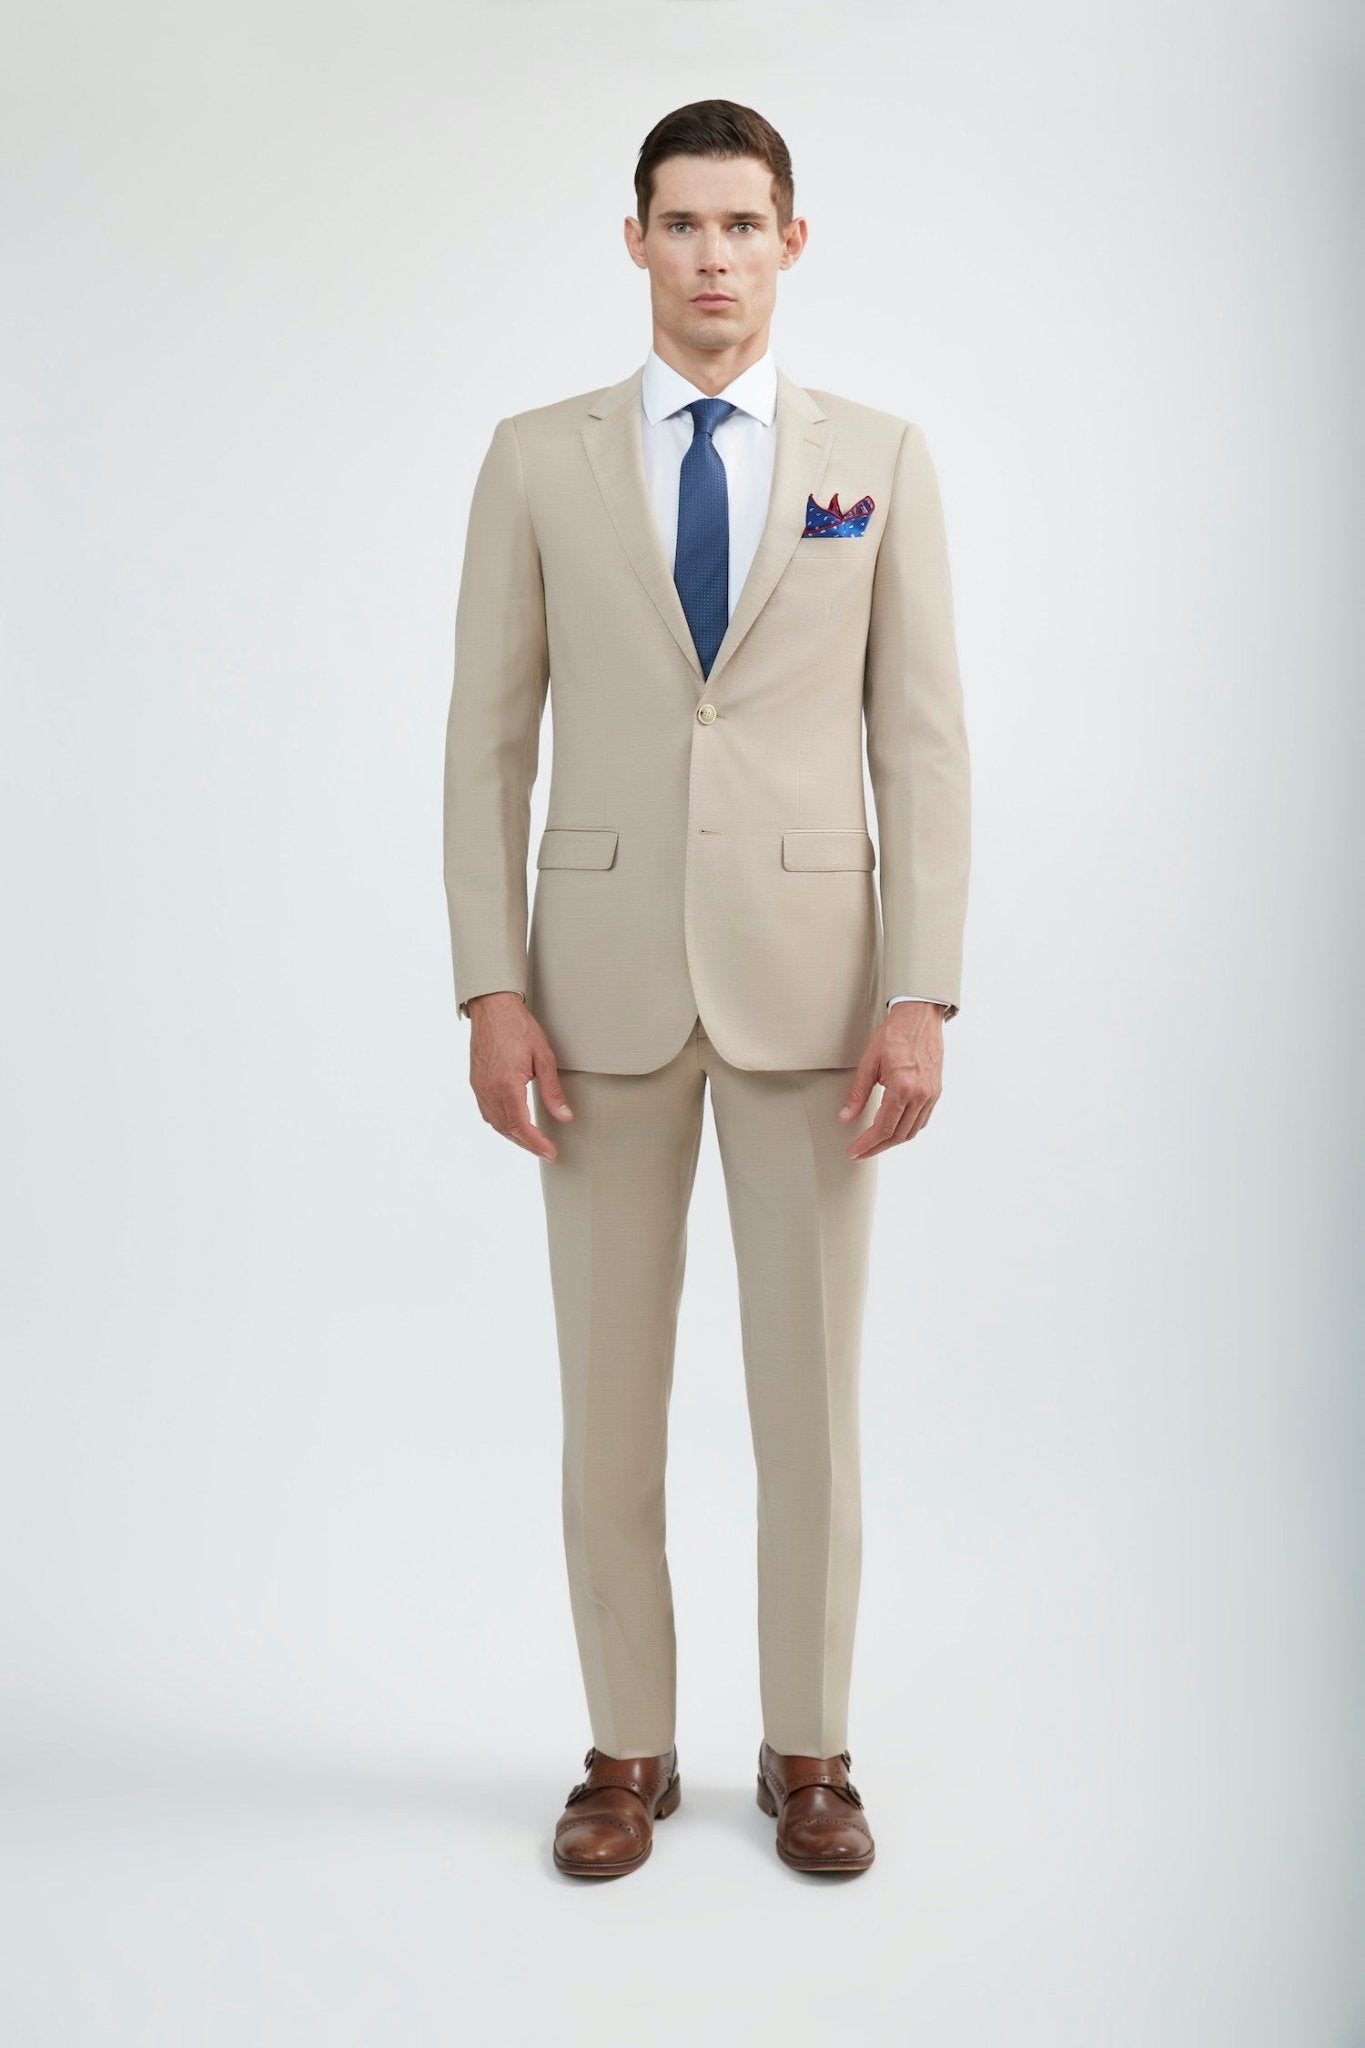 CALVINSUIT Men's 2 Buttons Beige Jacket & Pants Wedding Suits Set at Amazon  Men's Clothing store